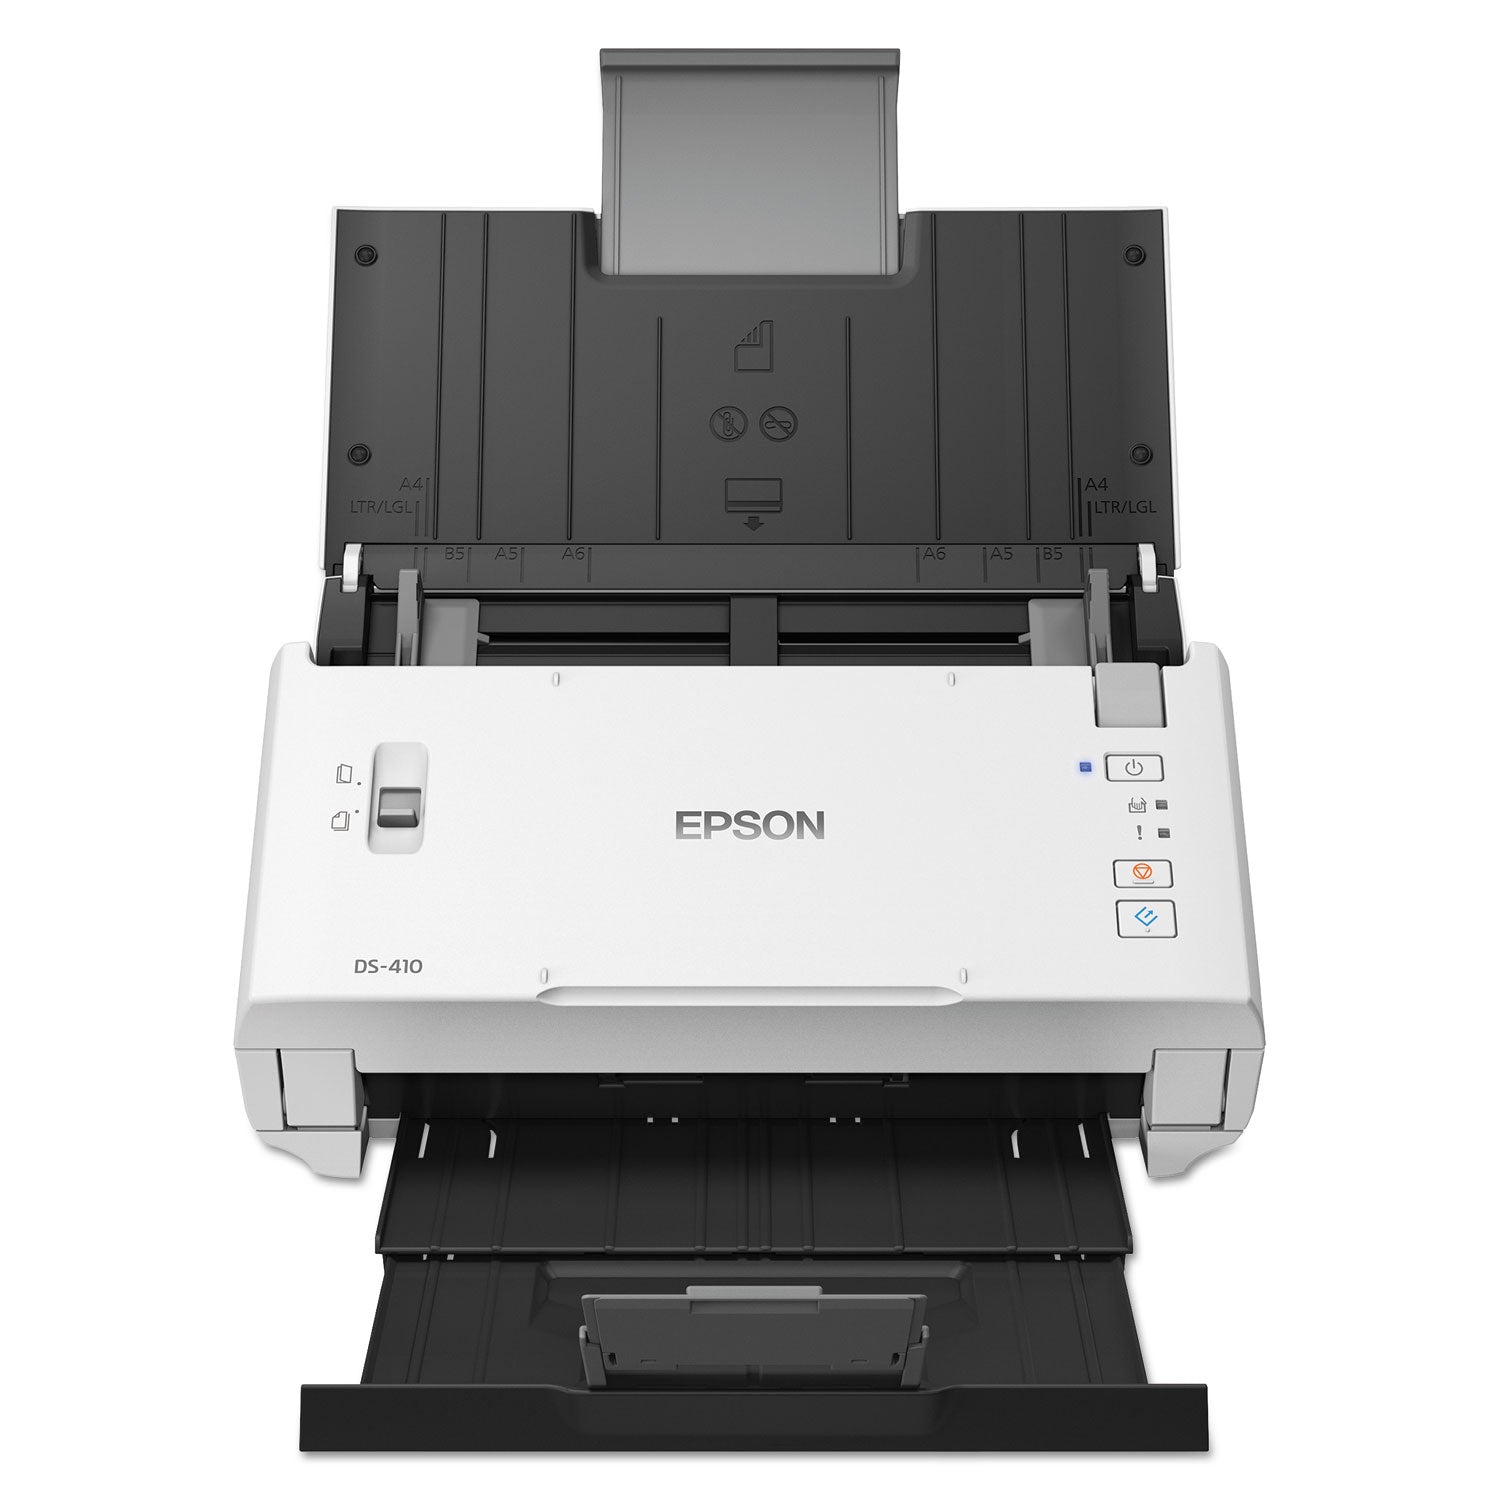 ds-410-document-scanner-600-dpi-optical-resolution-50-sheet-duplex-auto-document-feeder_epsb11b249201 - 4